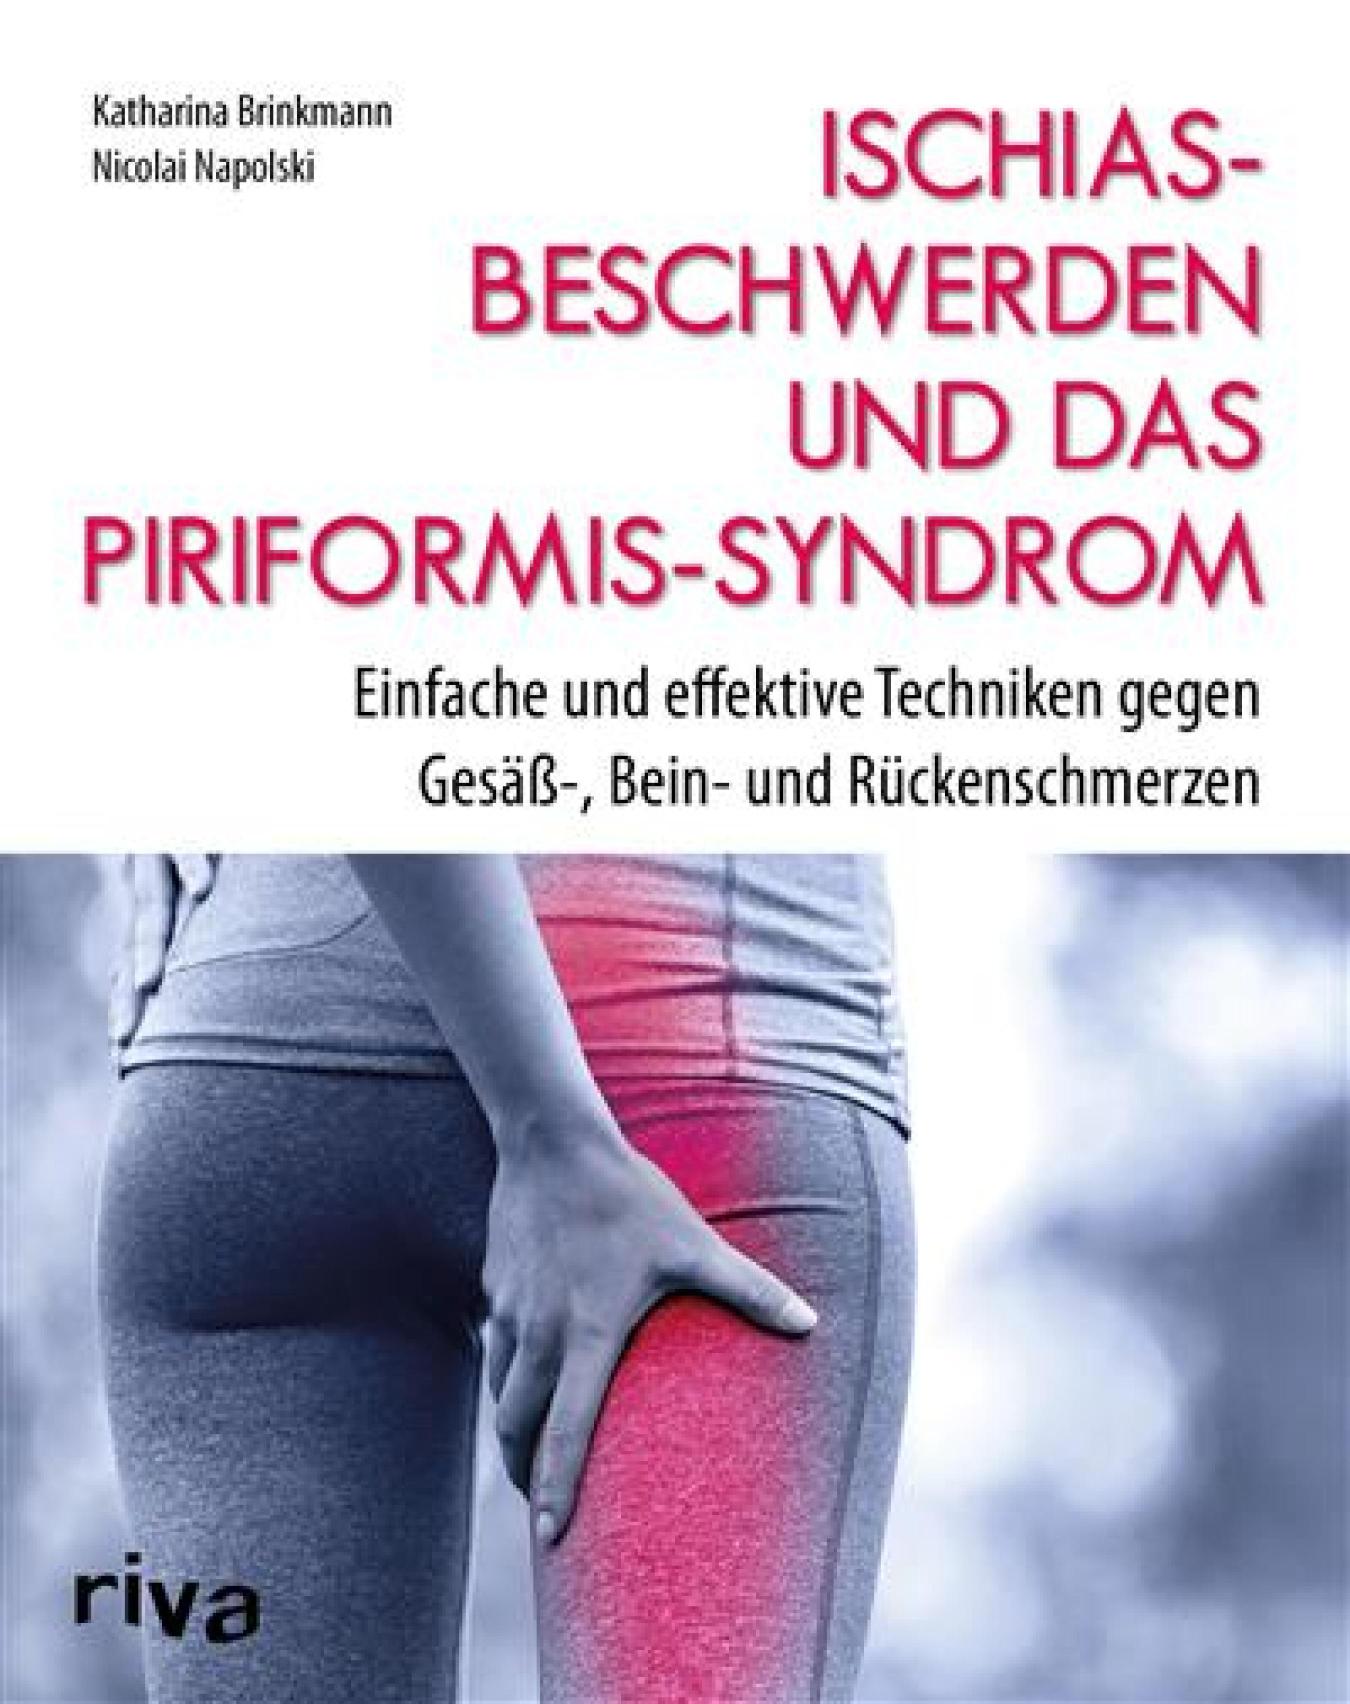 Ischiasbeschwerden und das Piriformis-Syndrom Einfache und effektive Techniken gegen Gesäß-, Bein- und Rückenschmerzen